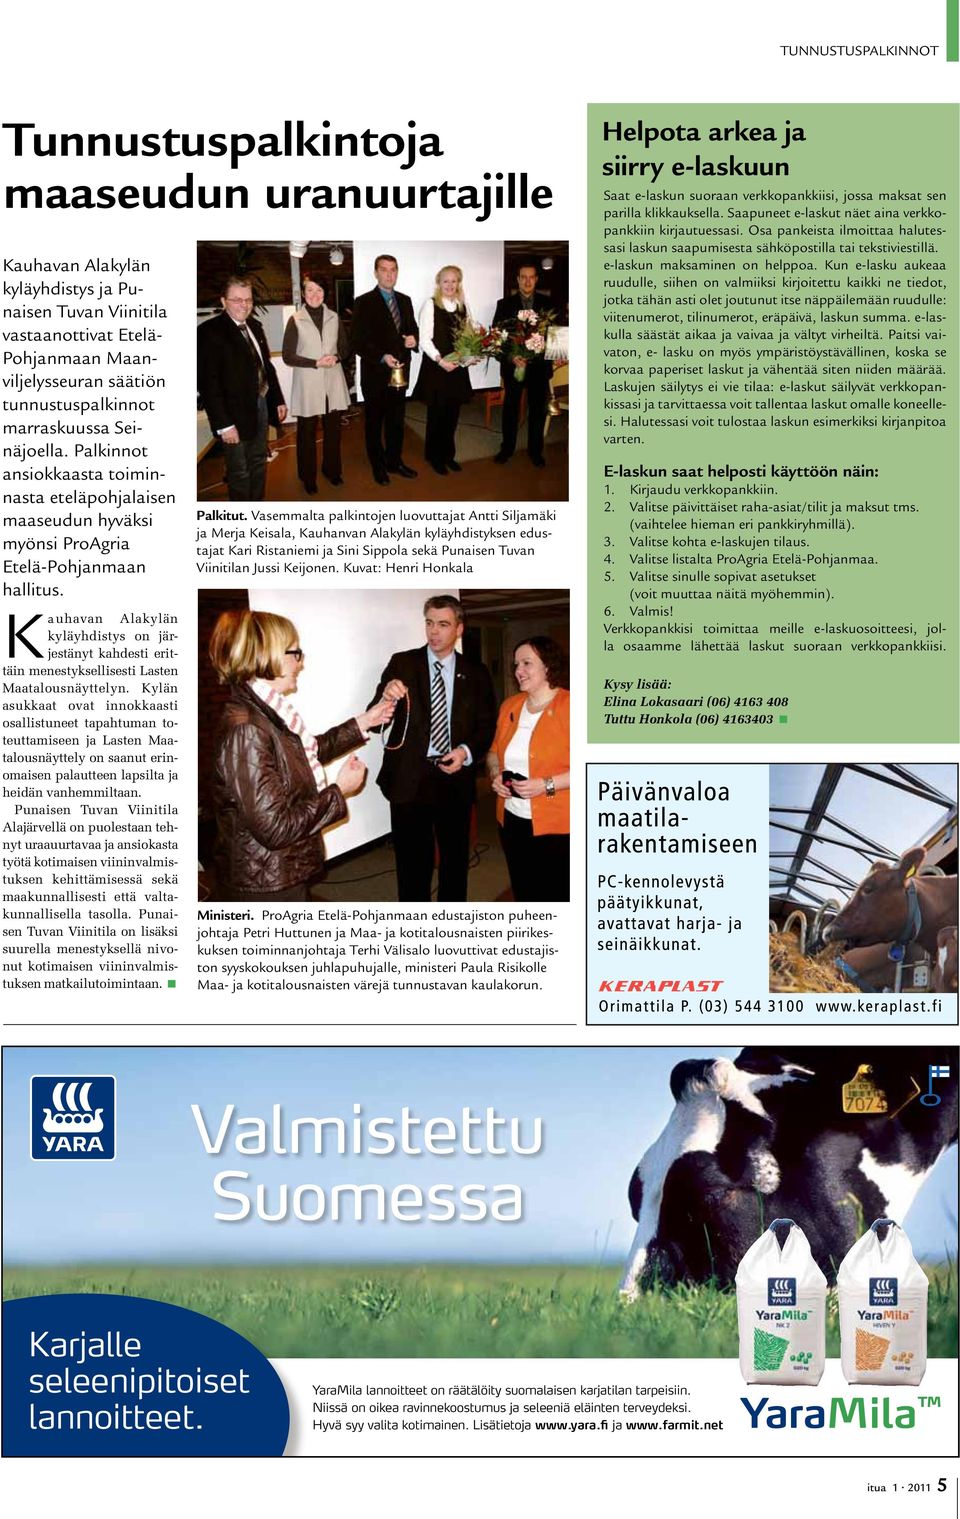 Kauhavan Alakylän kyläyhdistys on järjestänyt kahdesti erittäin menestyksellisesti Lasten Maatalousnäyttelyn.